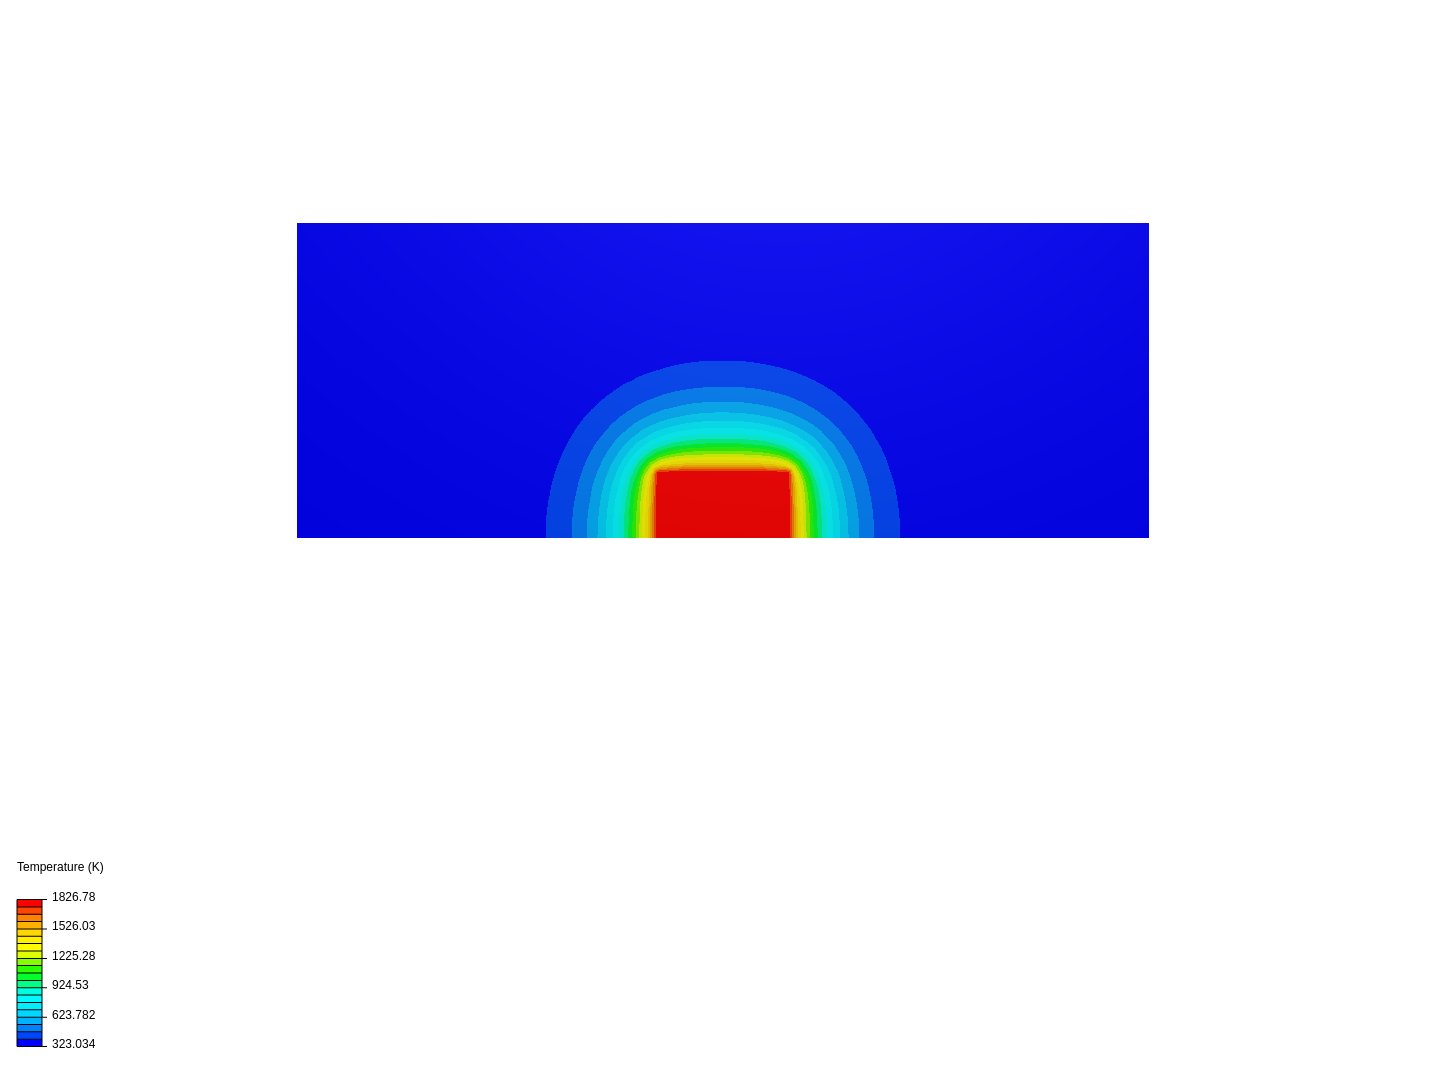 TemperatureCPU image